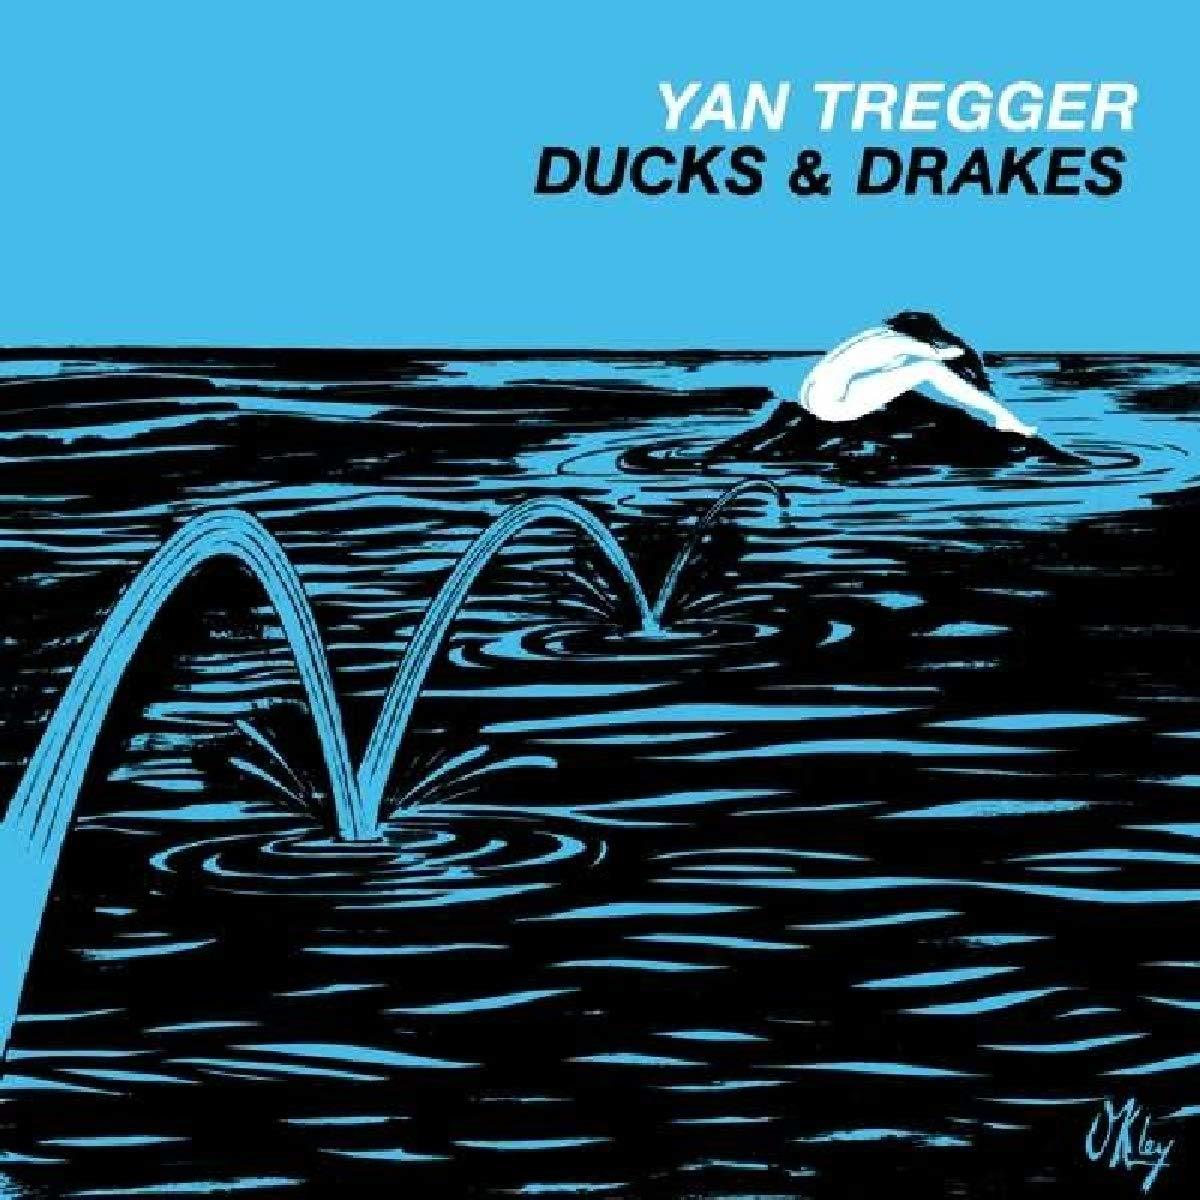 (Reissue) & - Drakes (CD) Tregger Ducks - Yan